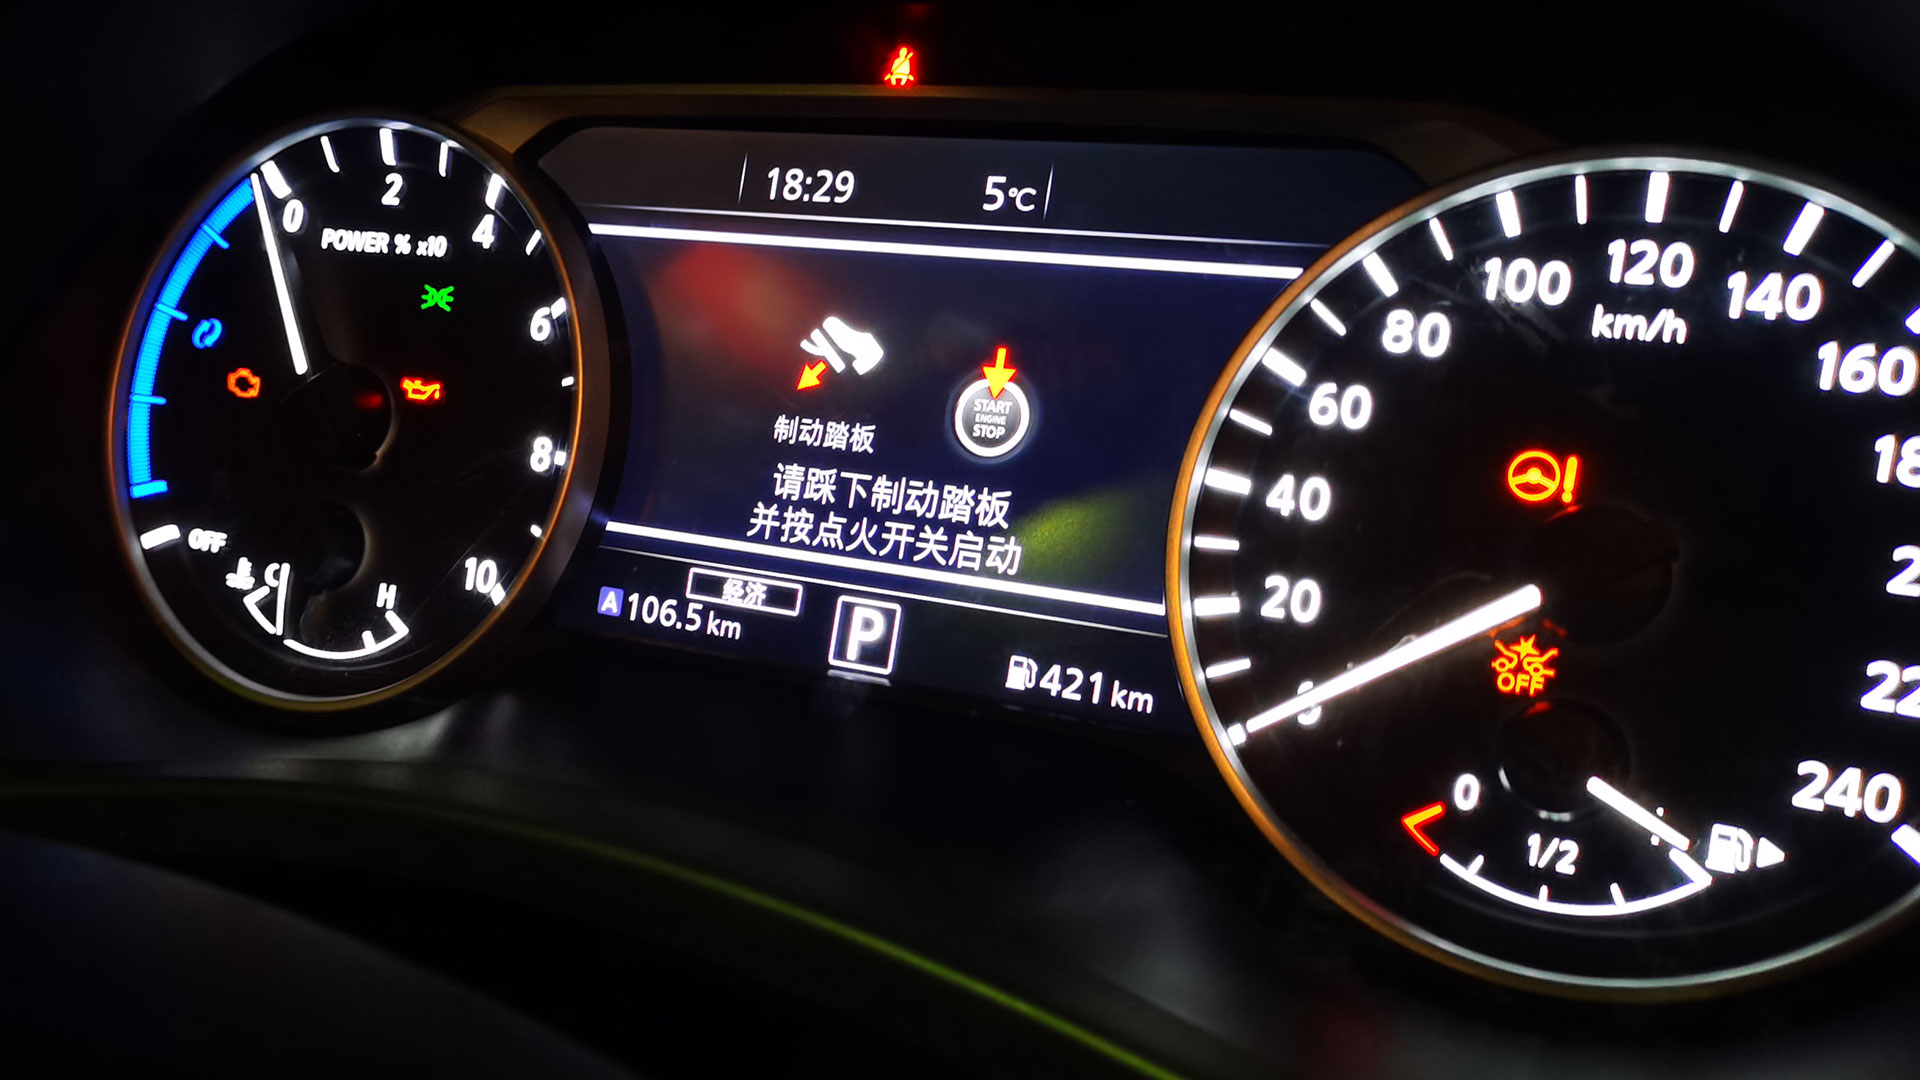 跑五环路一圈 用了不到4L油 轩逸e-POWER北京站深度驾乘体验